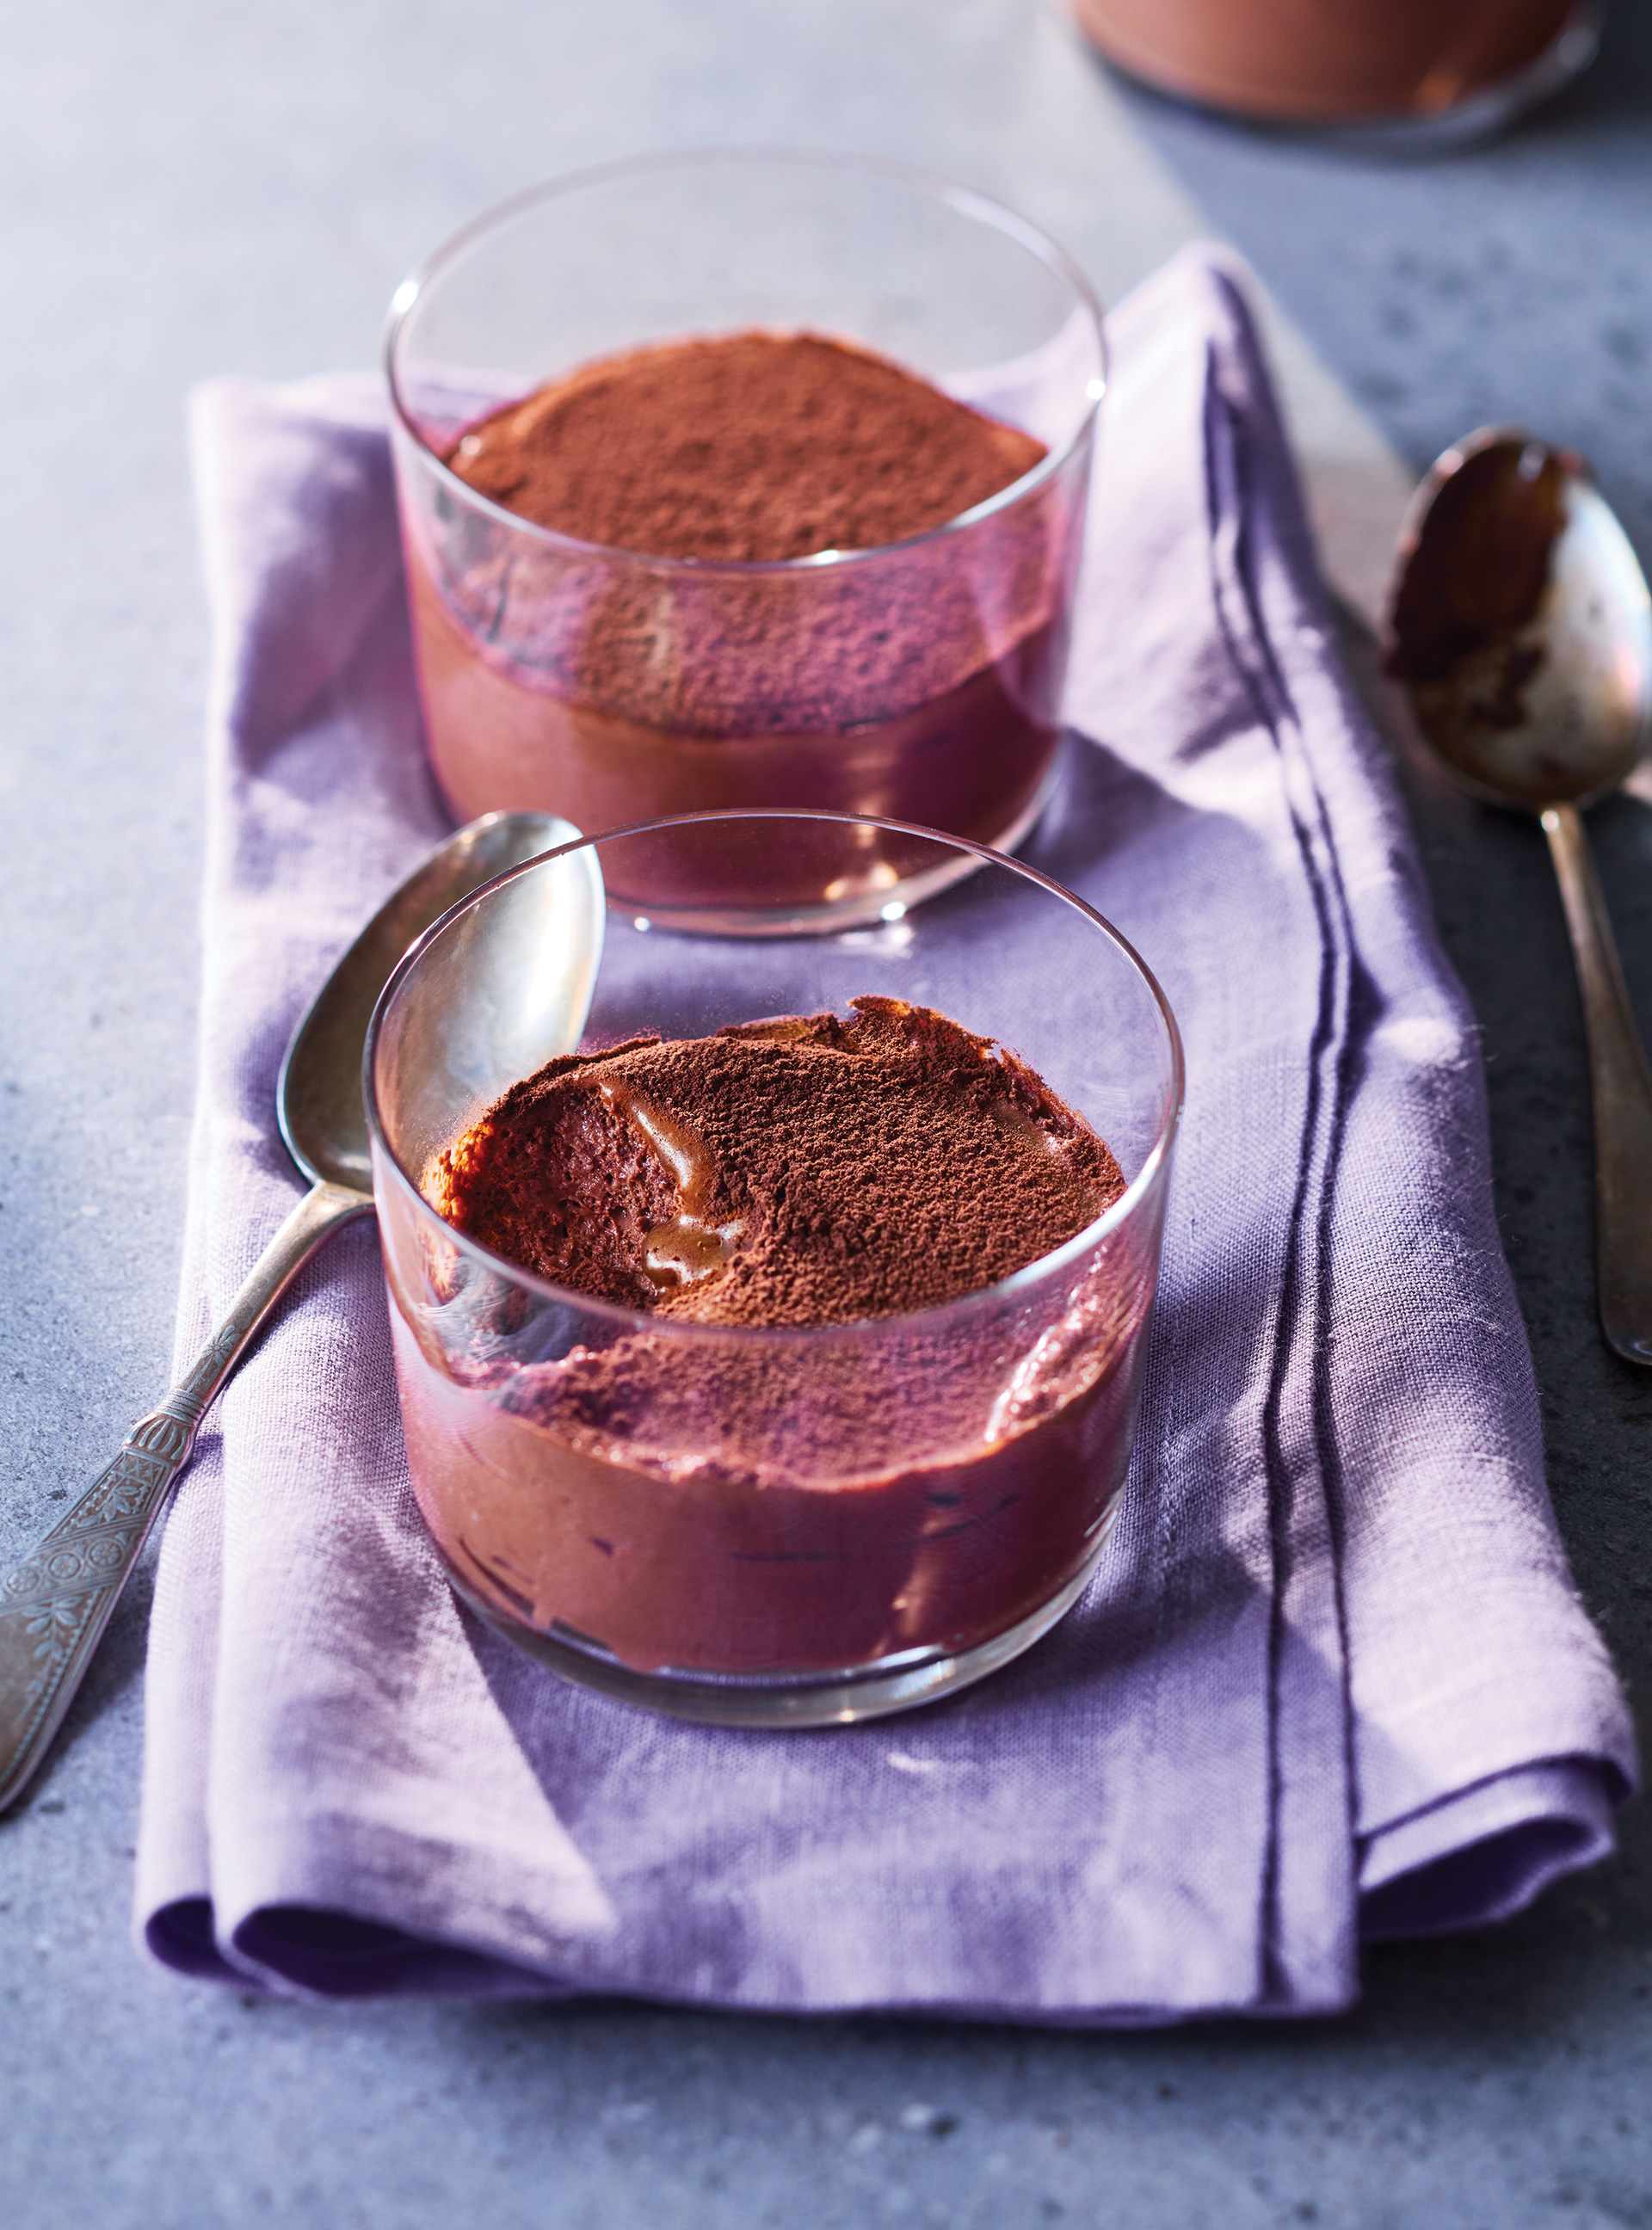 Mousse au chocolat en verrines - 5 ingredients 15 minutes